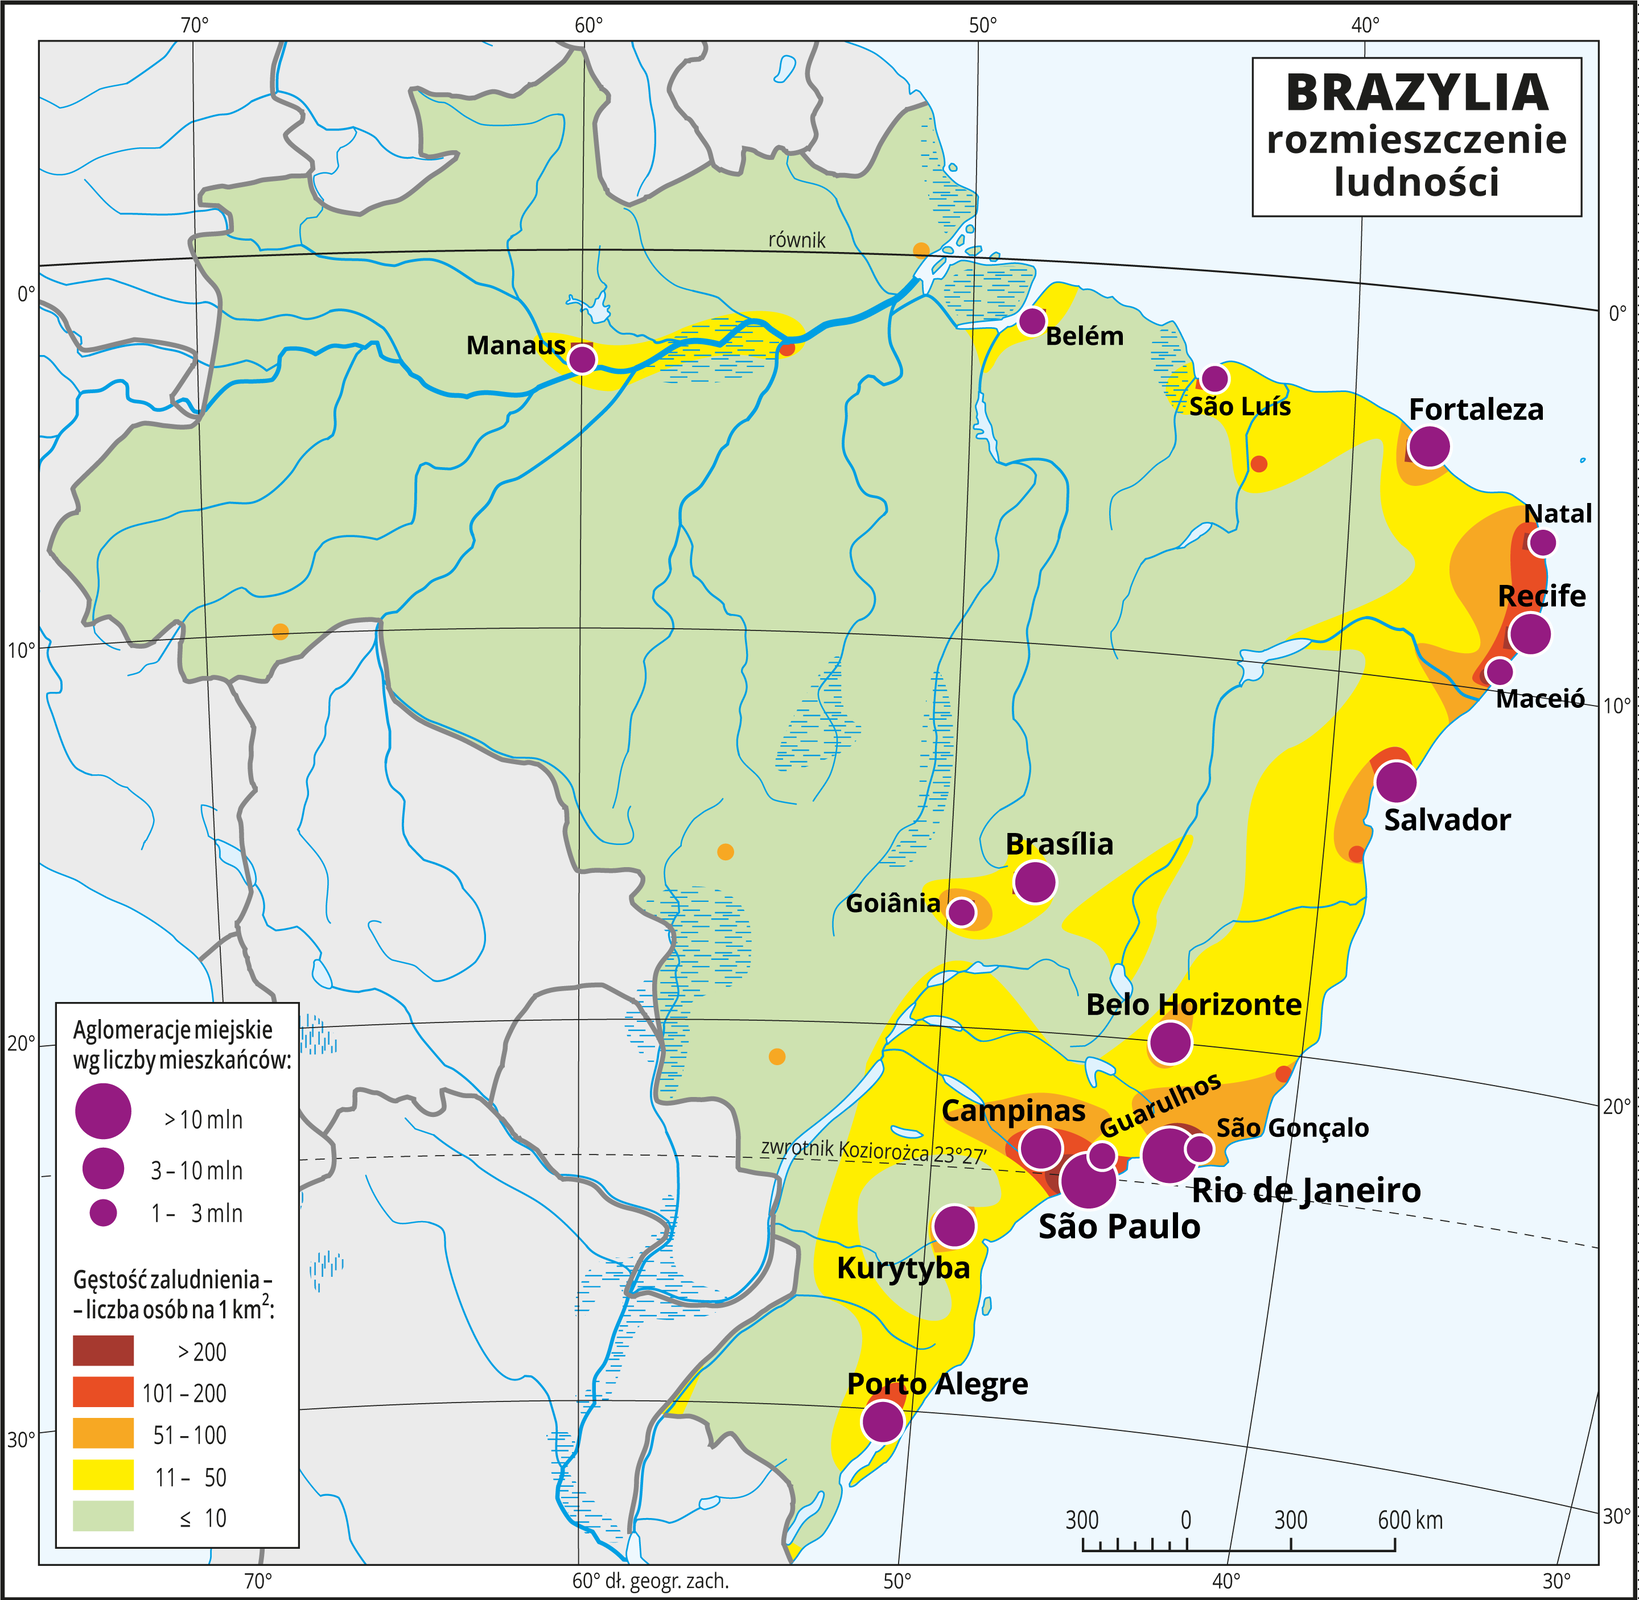 Ilustracja przedstawia mapę rozmieszczenia ludności w Brazylii. Kolorami od zielonego (w przewadze) przez żółty i pomarańczowy do czerwonego i brunatnego przedstawiono gęstość zaludnienia. Na wschodnich wybrzeżach przeważa kolor żółty (jedenaście do pięćdziesięciu osób na jeden kilometr kwadratowy). Wokół miast, które też przeważnie skupione są w tym rejonie – kolor pomarańczowy do brunatnego oznaczający dużą gęstość zaludnienia powyżej pięćdziesięciu osób na kilometr kwadratowy. Na mapie różnej wielkości sygnatury (koła) obrazujące aglomeracje miejskie wg liczby mieszkańców: São Paulo, Rio de Janeiro – powyżej dziesięciu milionów mieszkańców, Recife, Salvador, Kurytyba, Porto Alegre – od trzech do dziesięciu milionów mieszkańców. Kilkanaście mniejszych sygnatur oznaczających miasta o liczbie mieszkańców od jednego do trzech milionów mieszkańców. Dookoła mapy w białej ramce opisano współrzędne geograficzne co dziesięć stopni. W legendzie umieszczono i opisano kolory użyte na mapie.